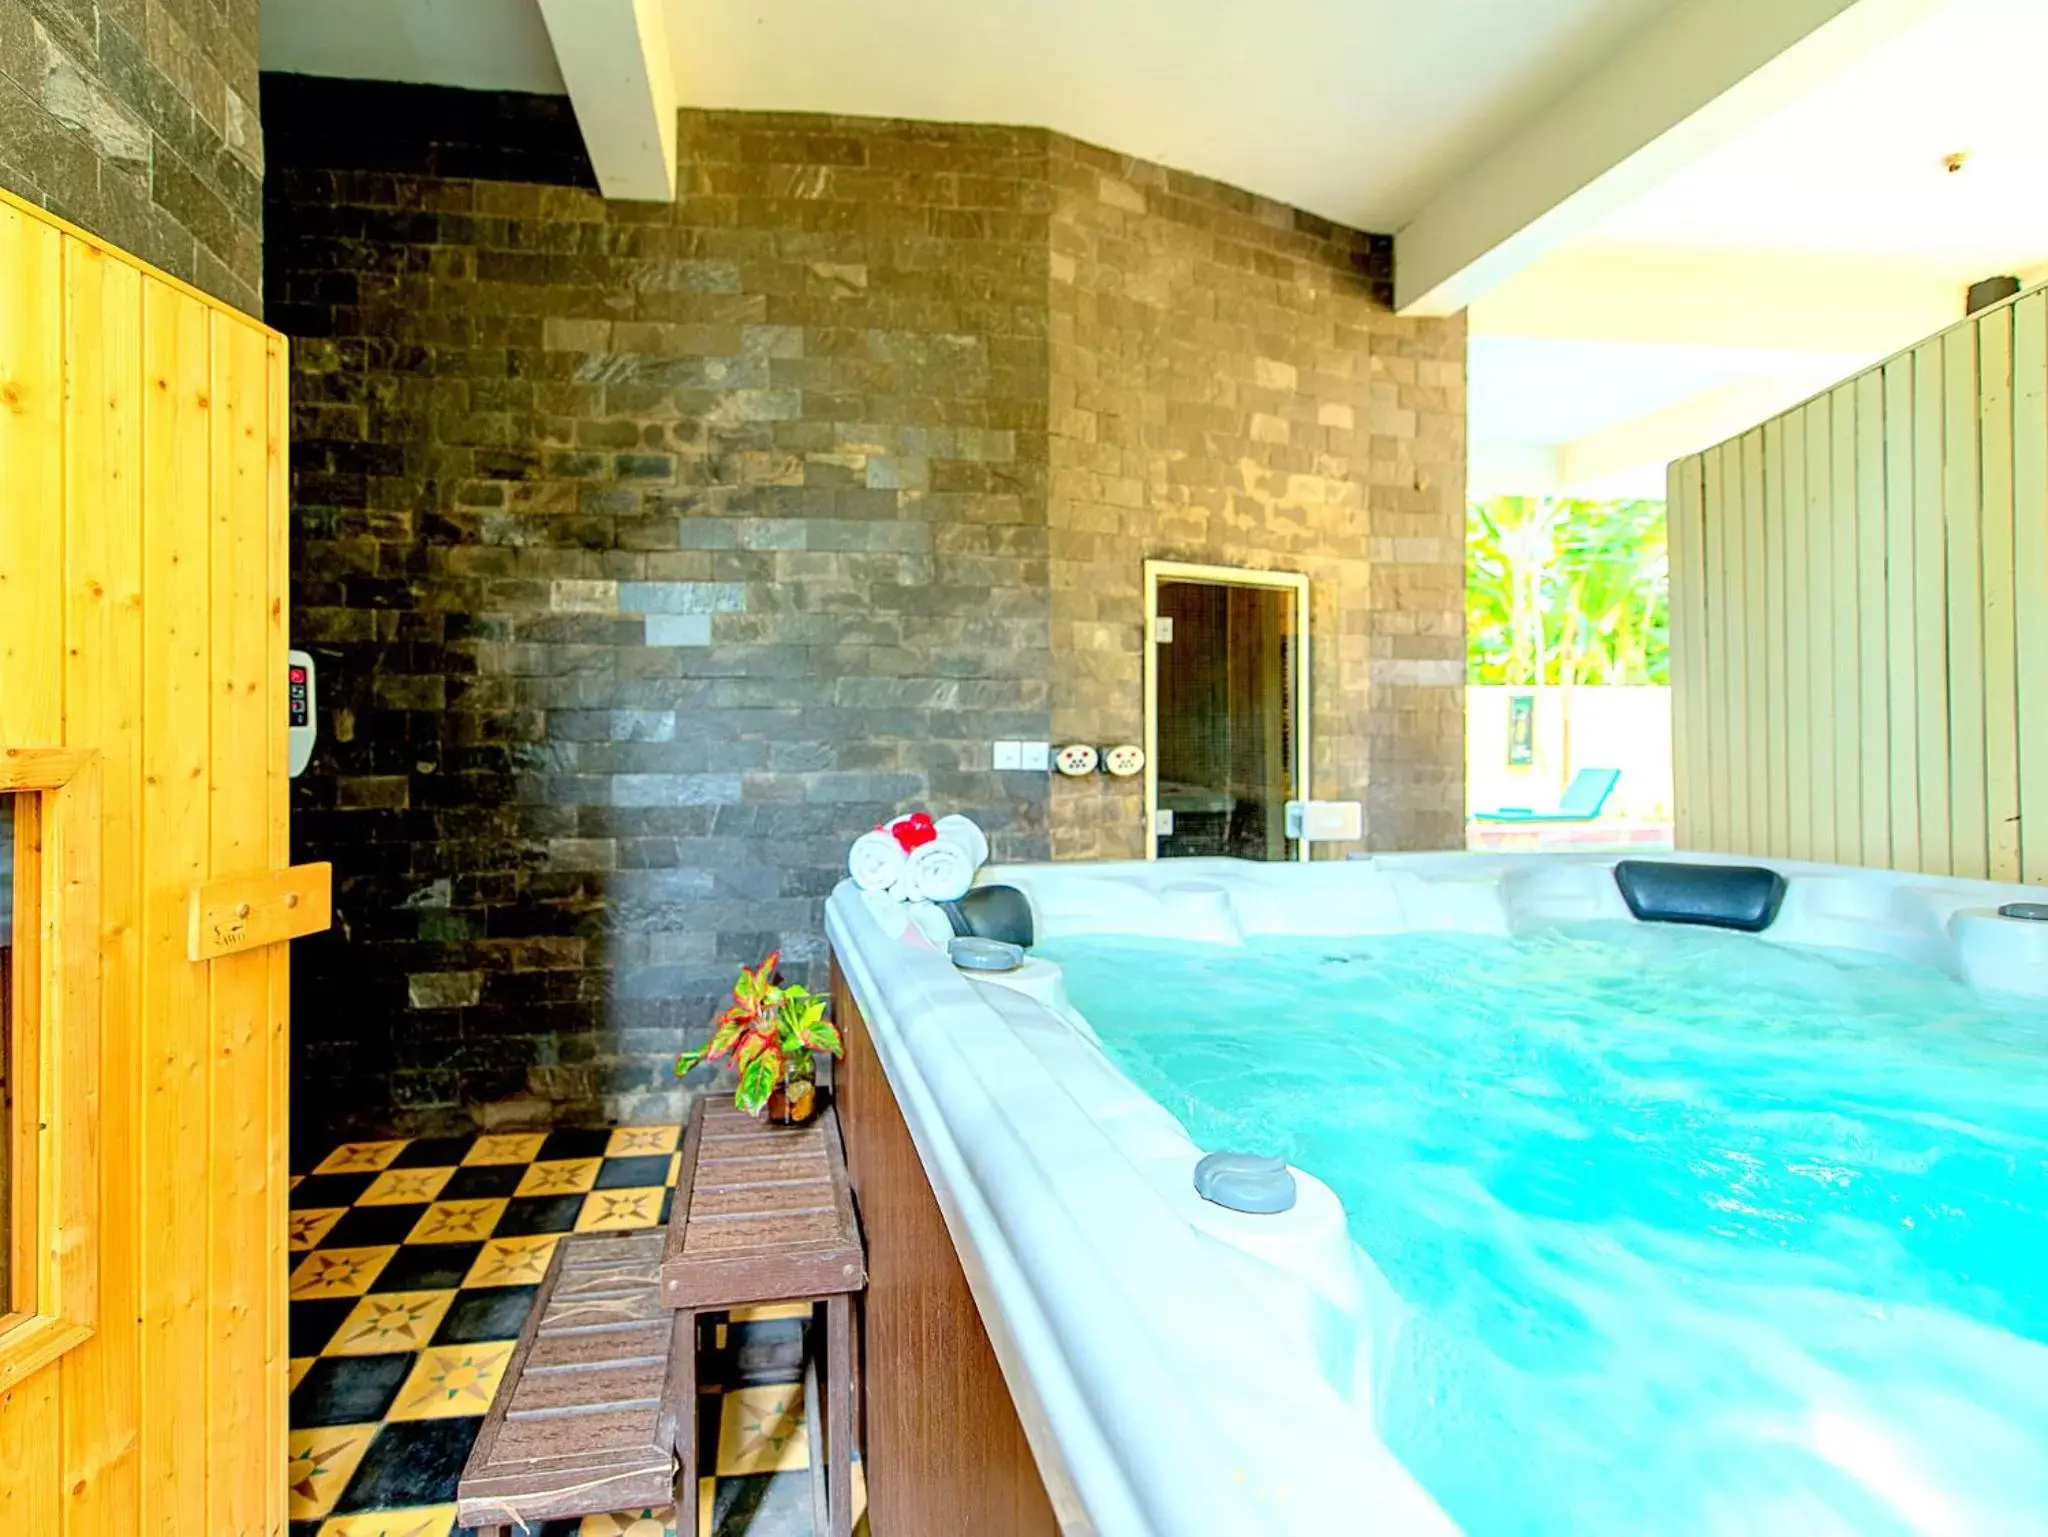 Hot Spring Bath, Swimming Pool in Residence Wat Damnak